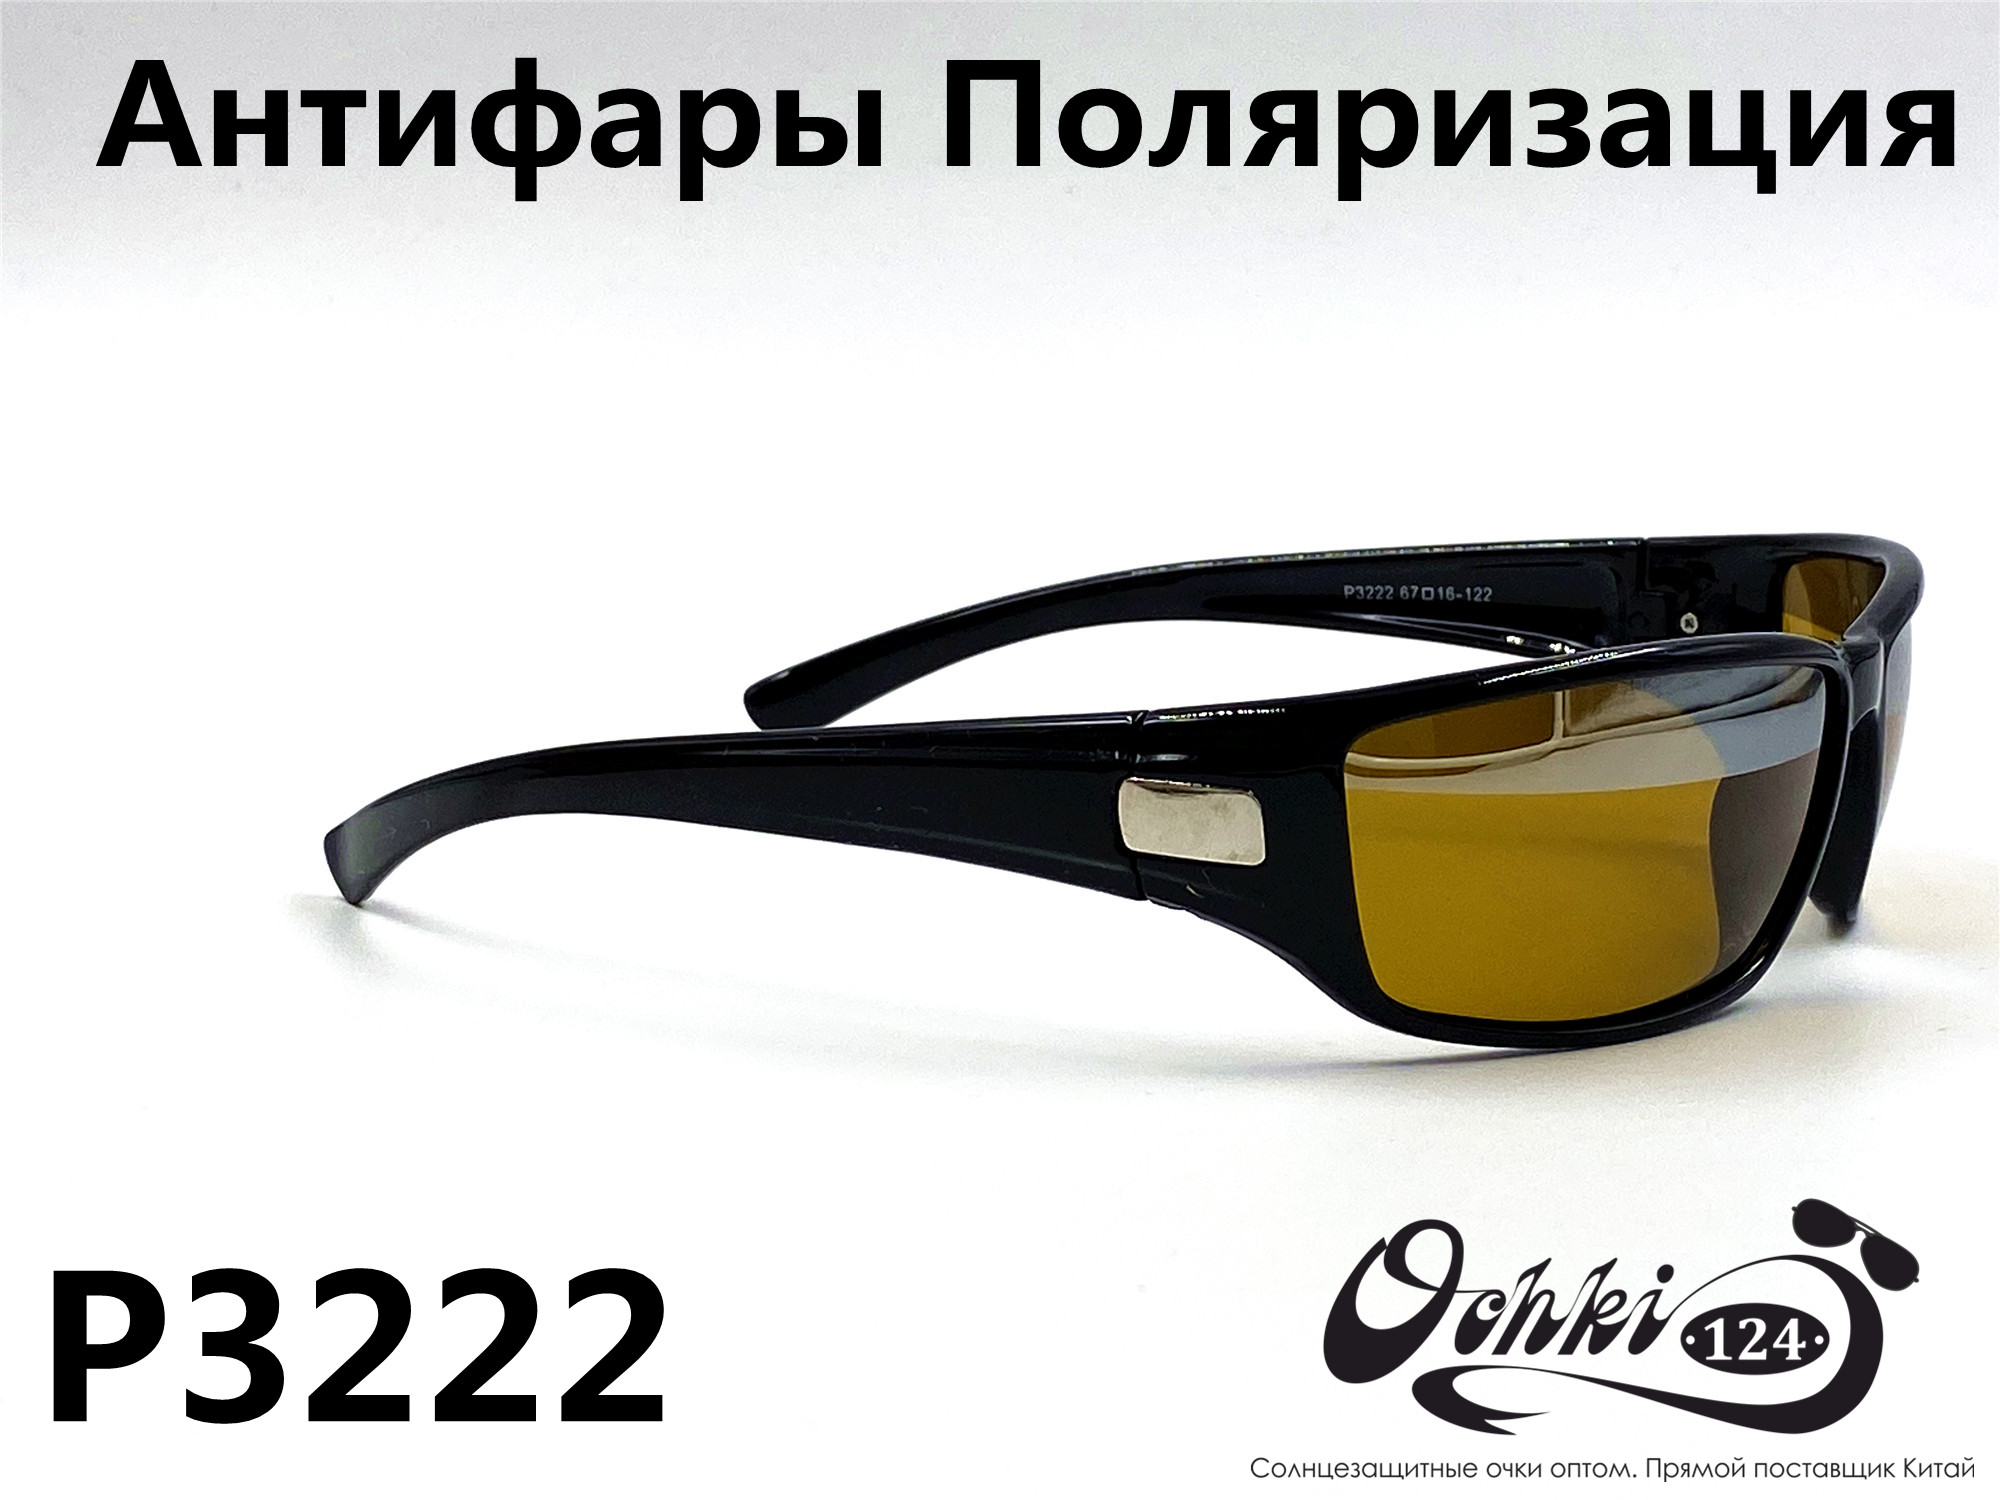  Солнцезащитные очки картинка 2022 Мужские антифары-спорт, с зеркальной полосой, Желтый Polarized P3222-1 